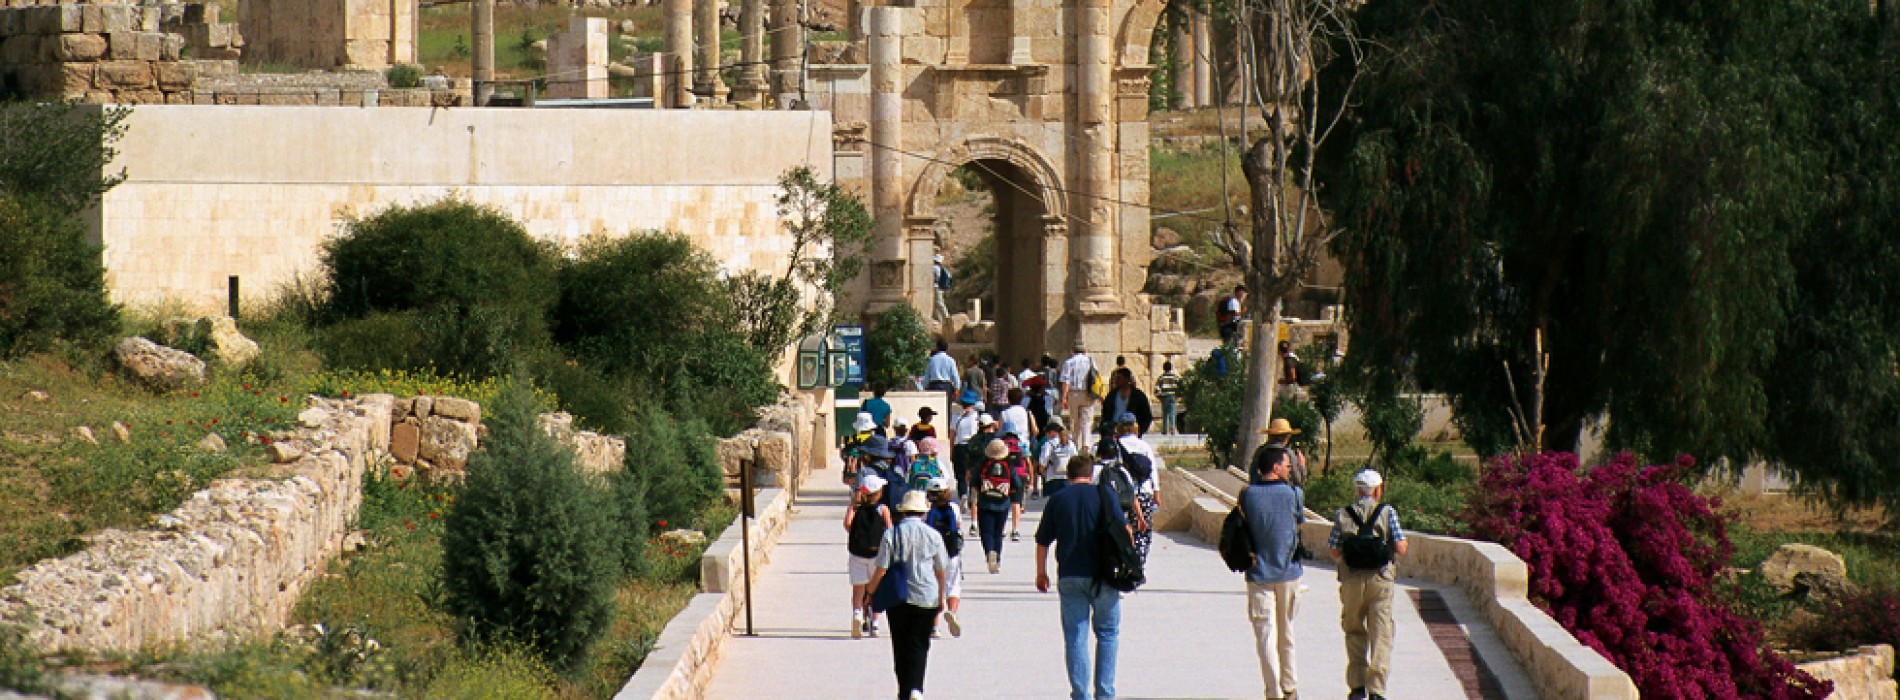 Visit Jerash, Jordan – for Rome away from Rome!